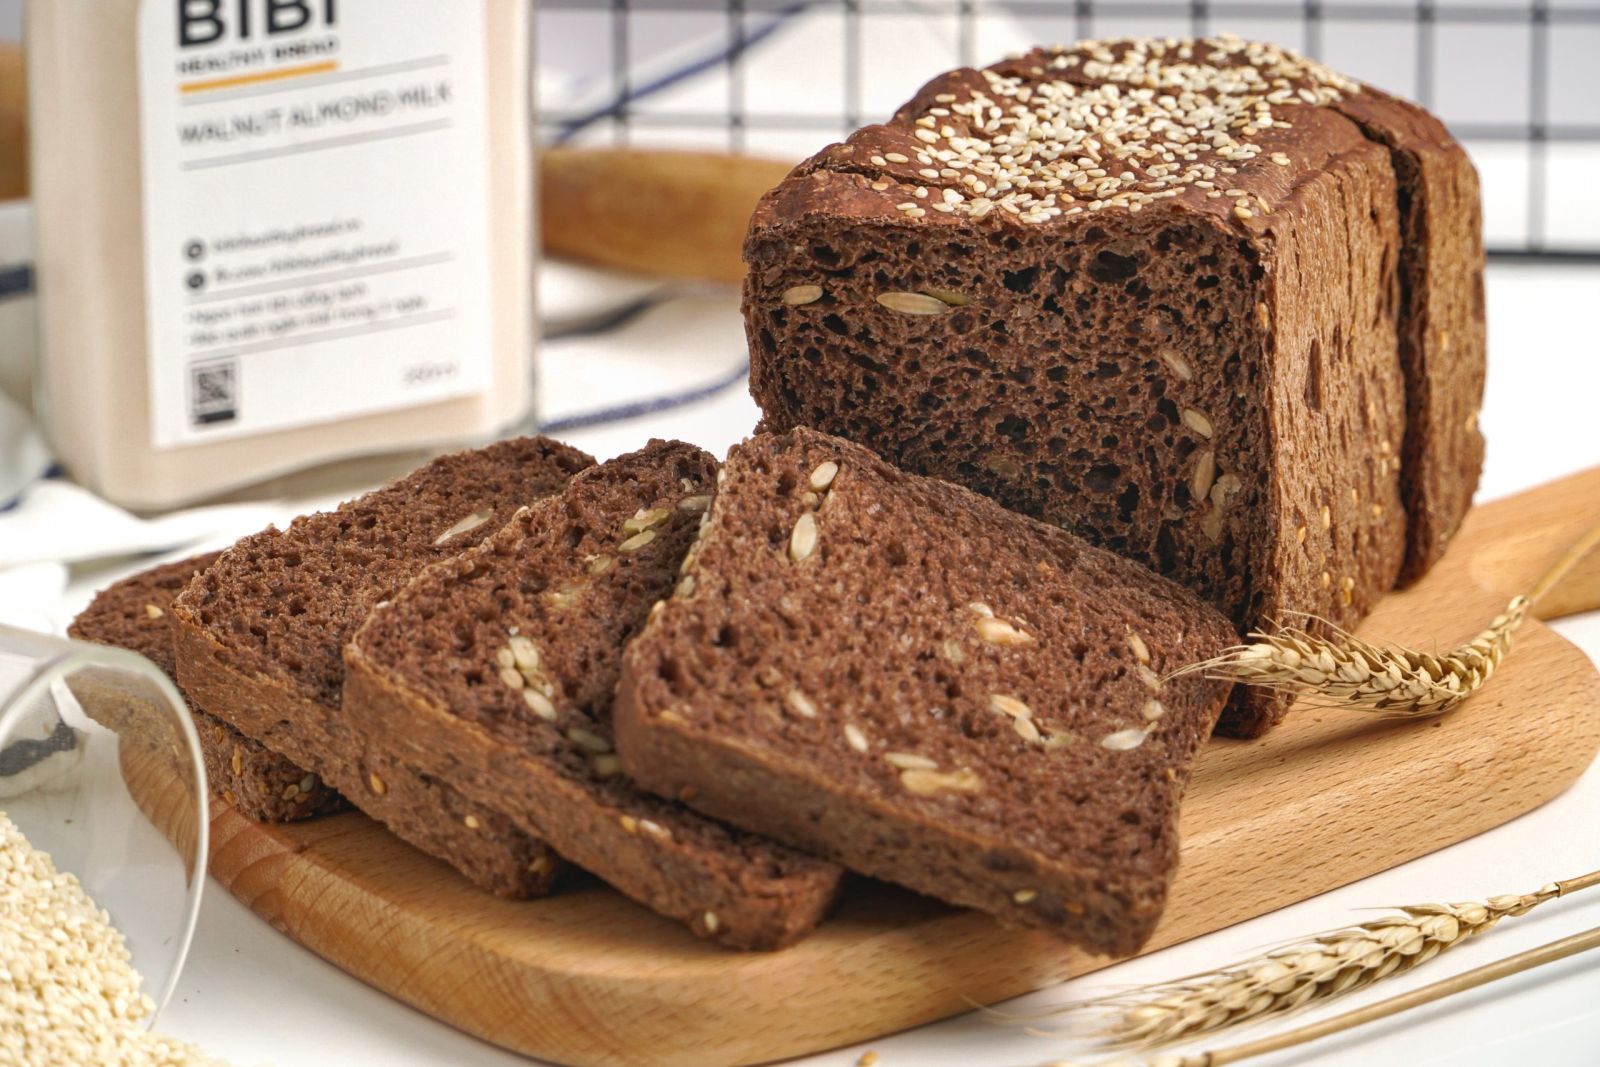 Bánh mì đen được làm từ lúa mạch đen nên hoàn toàn không chứa tinh bột